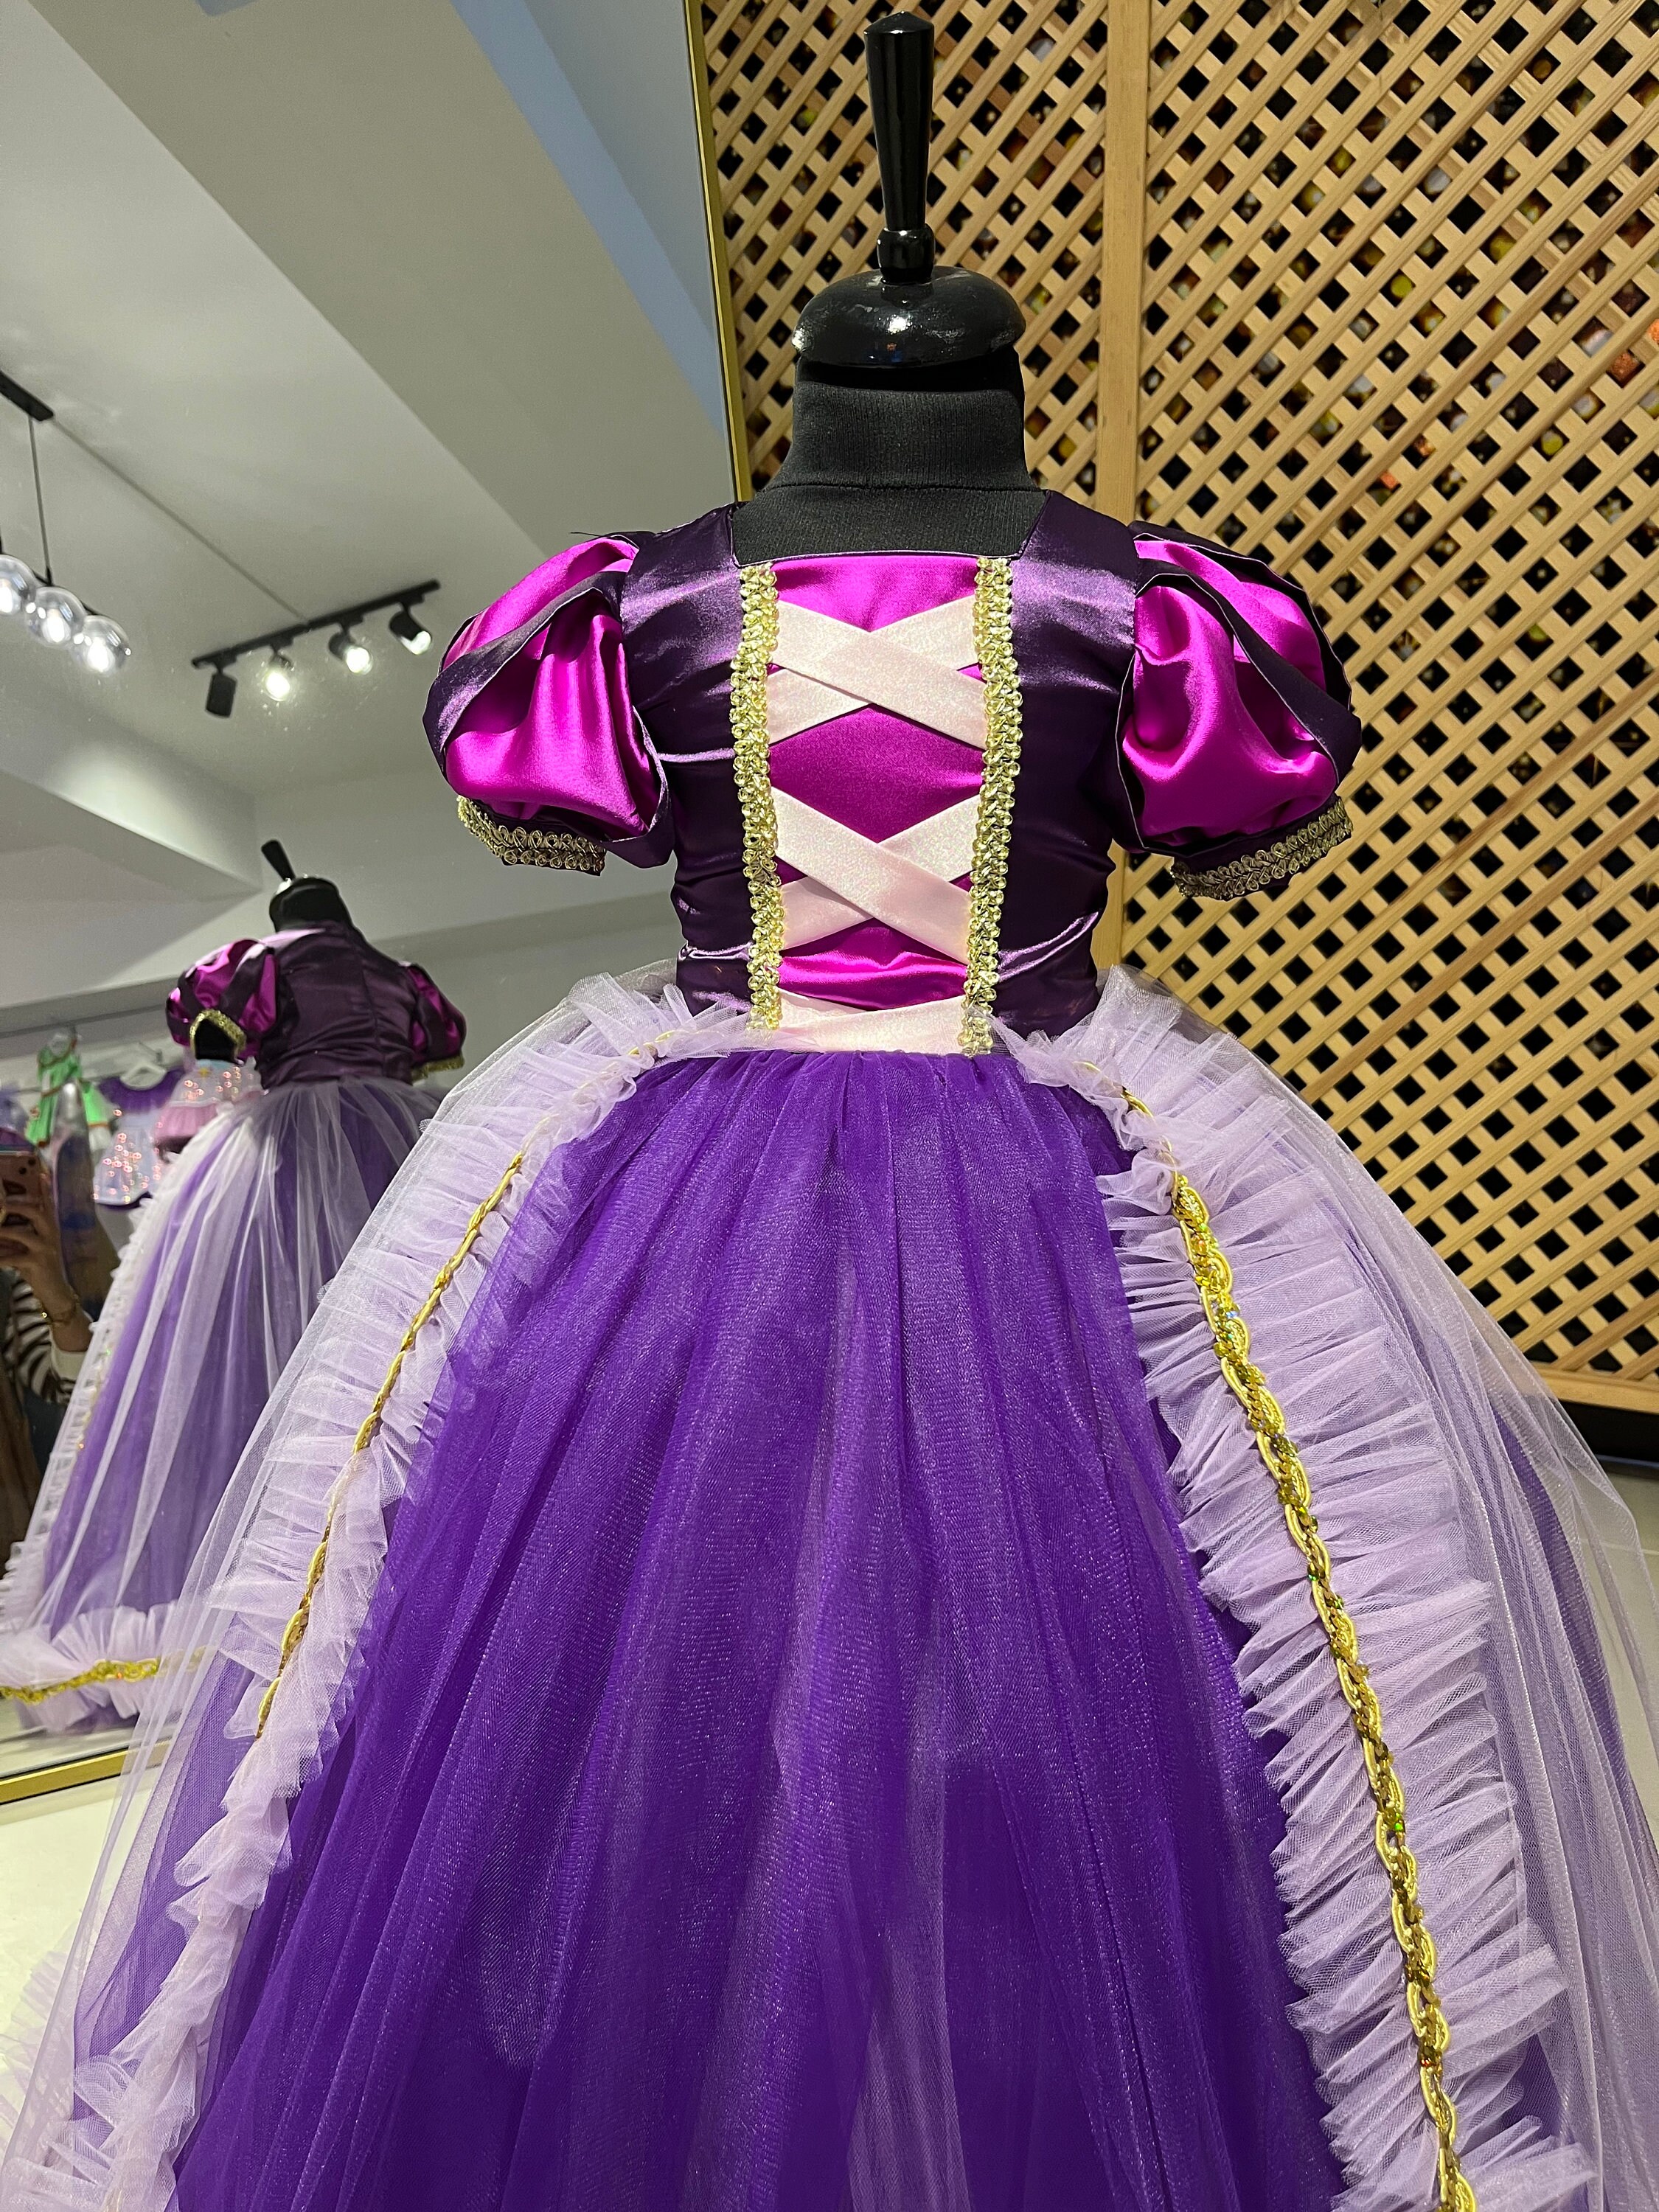 Costume Raiponce, Robe Princesse Raiponce pour tout-petits, Robe violette  pour fille -  France